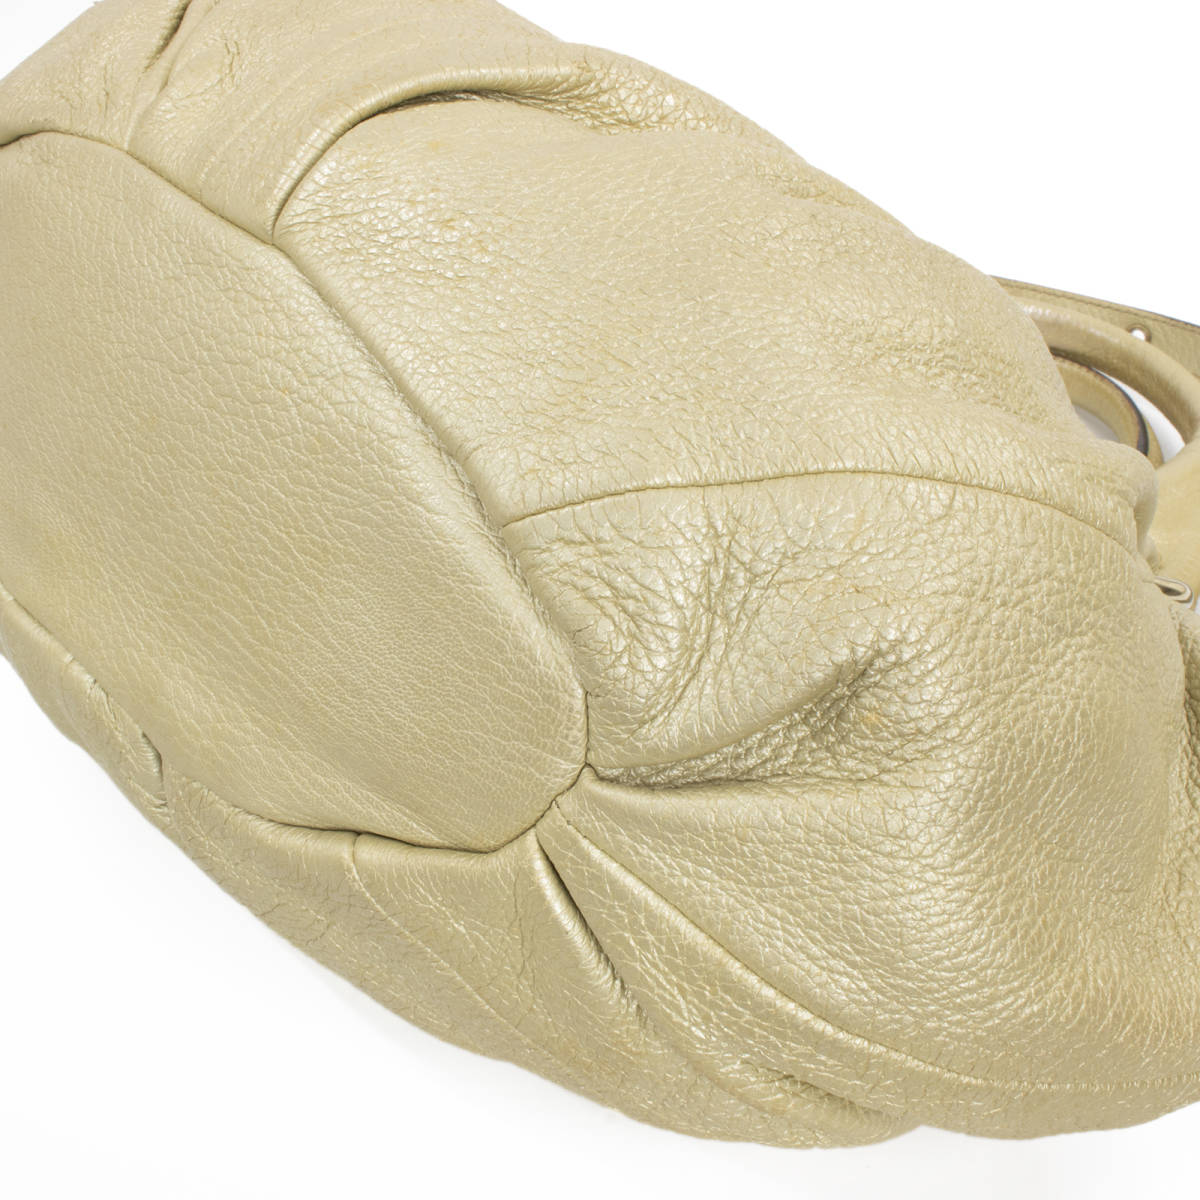 【全額返金保証・送料無料・良品】セリーヌの2wayハンドバッグ・肩掛け・正規品・ピロー スモール・シャンパンゴールド系・鞄・バック_画像7